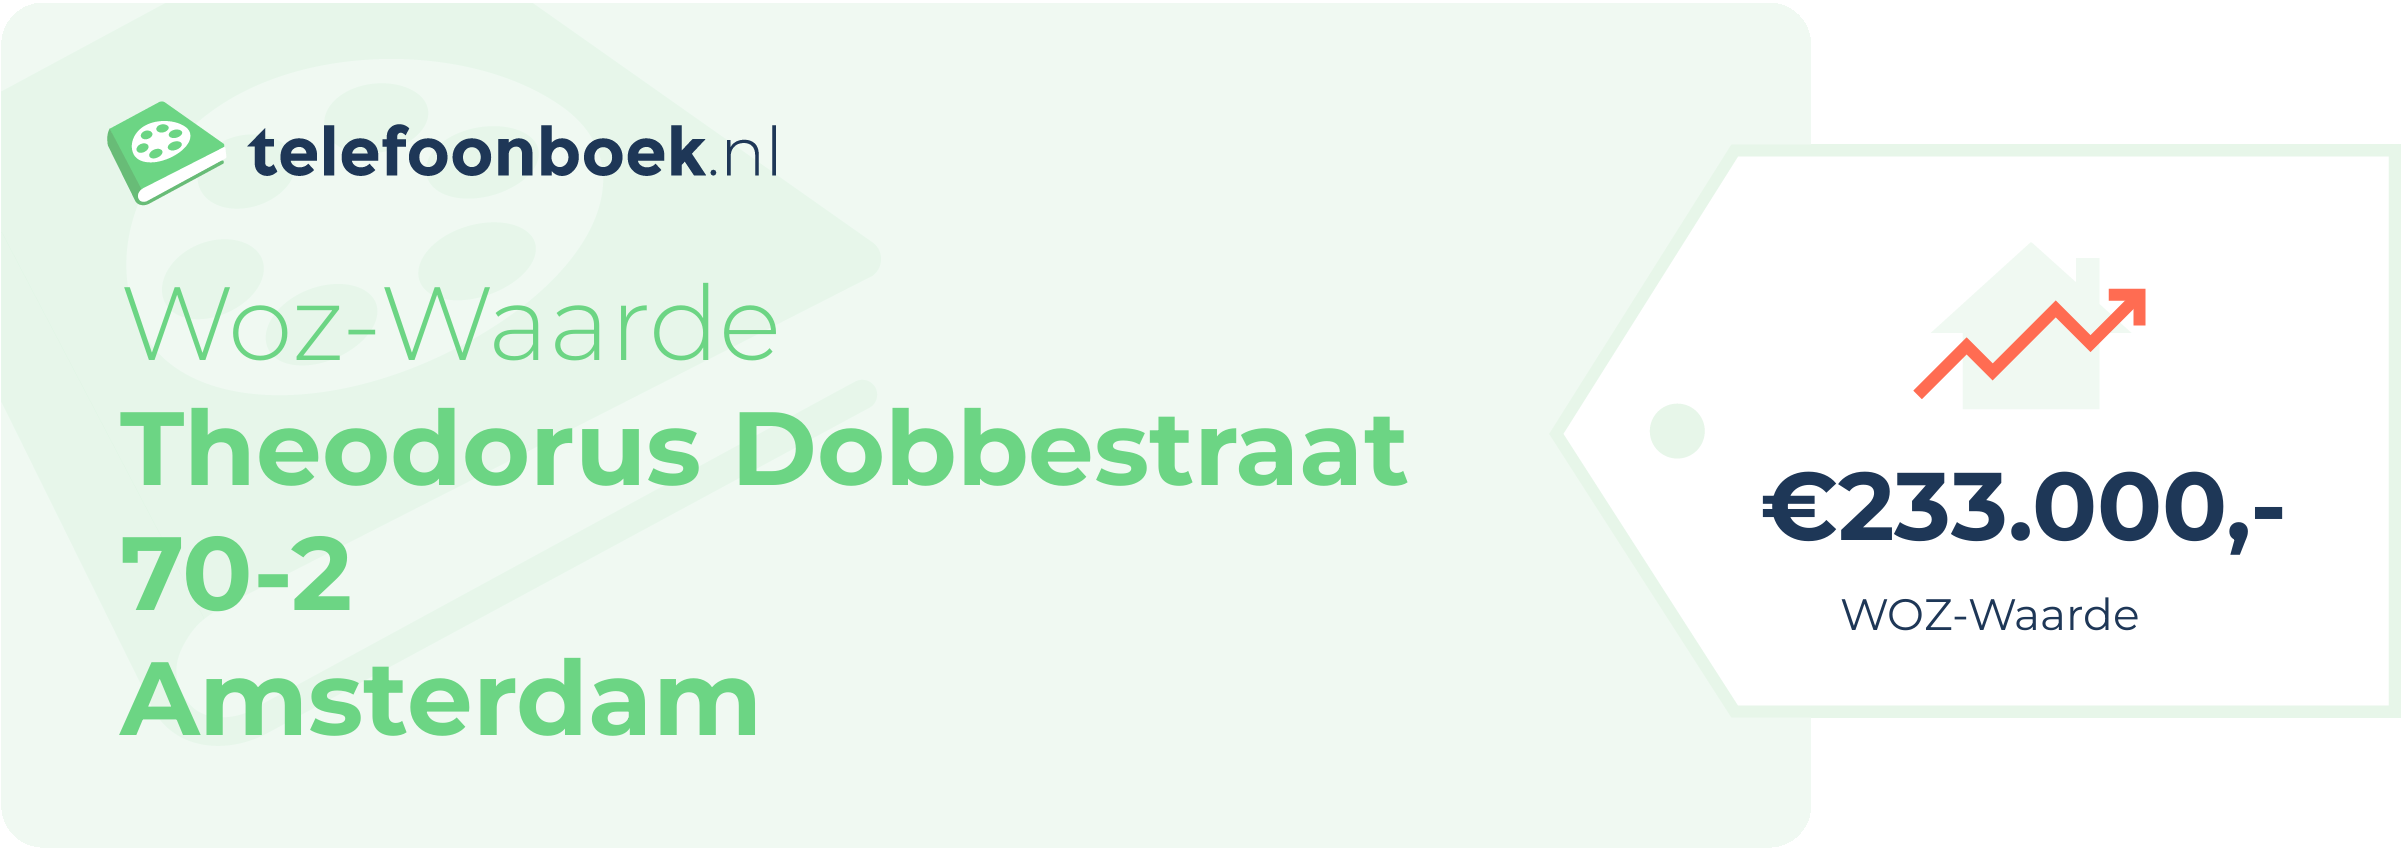 WOZ-waarde Theodorus Dobbestraat 70-2 Amsterdam